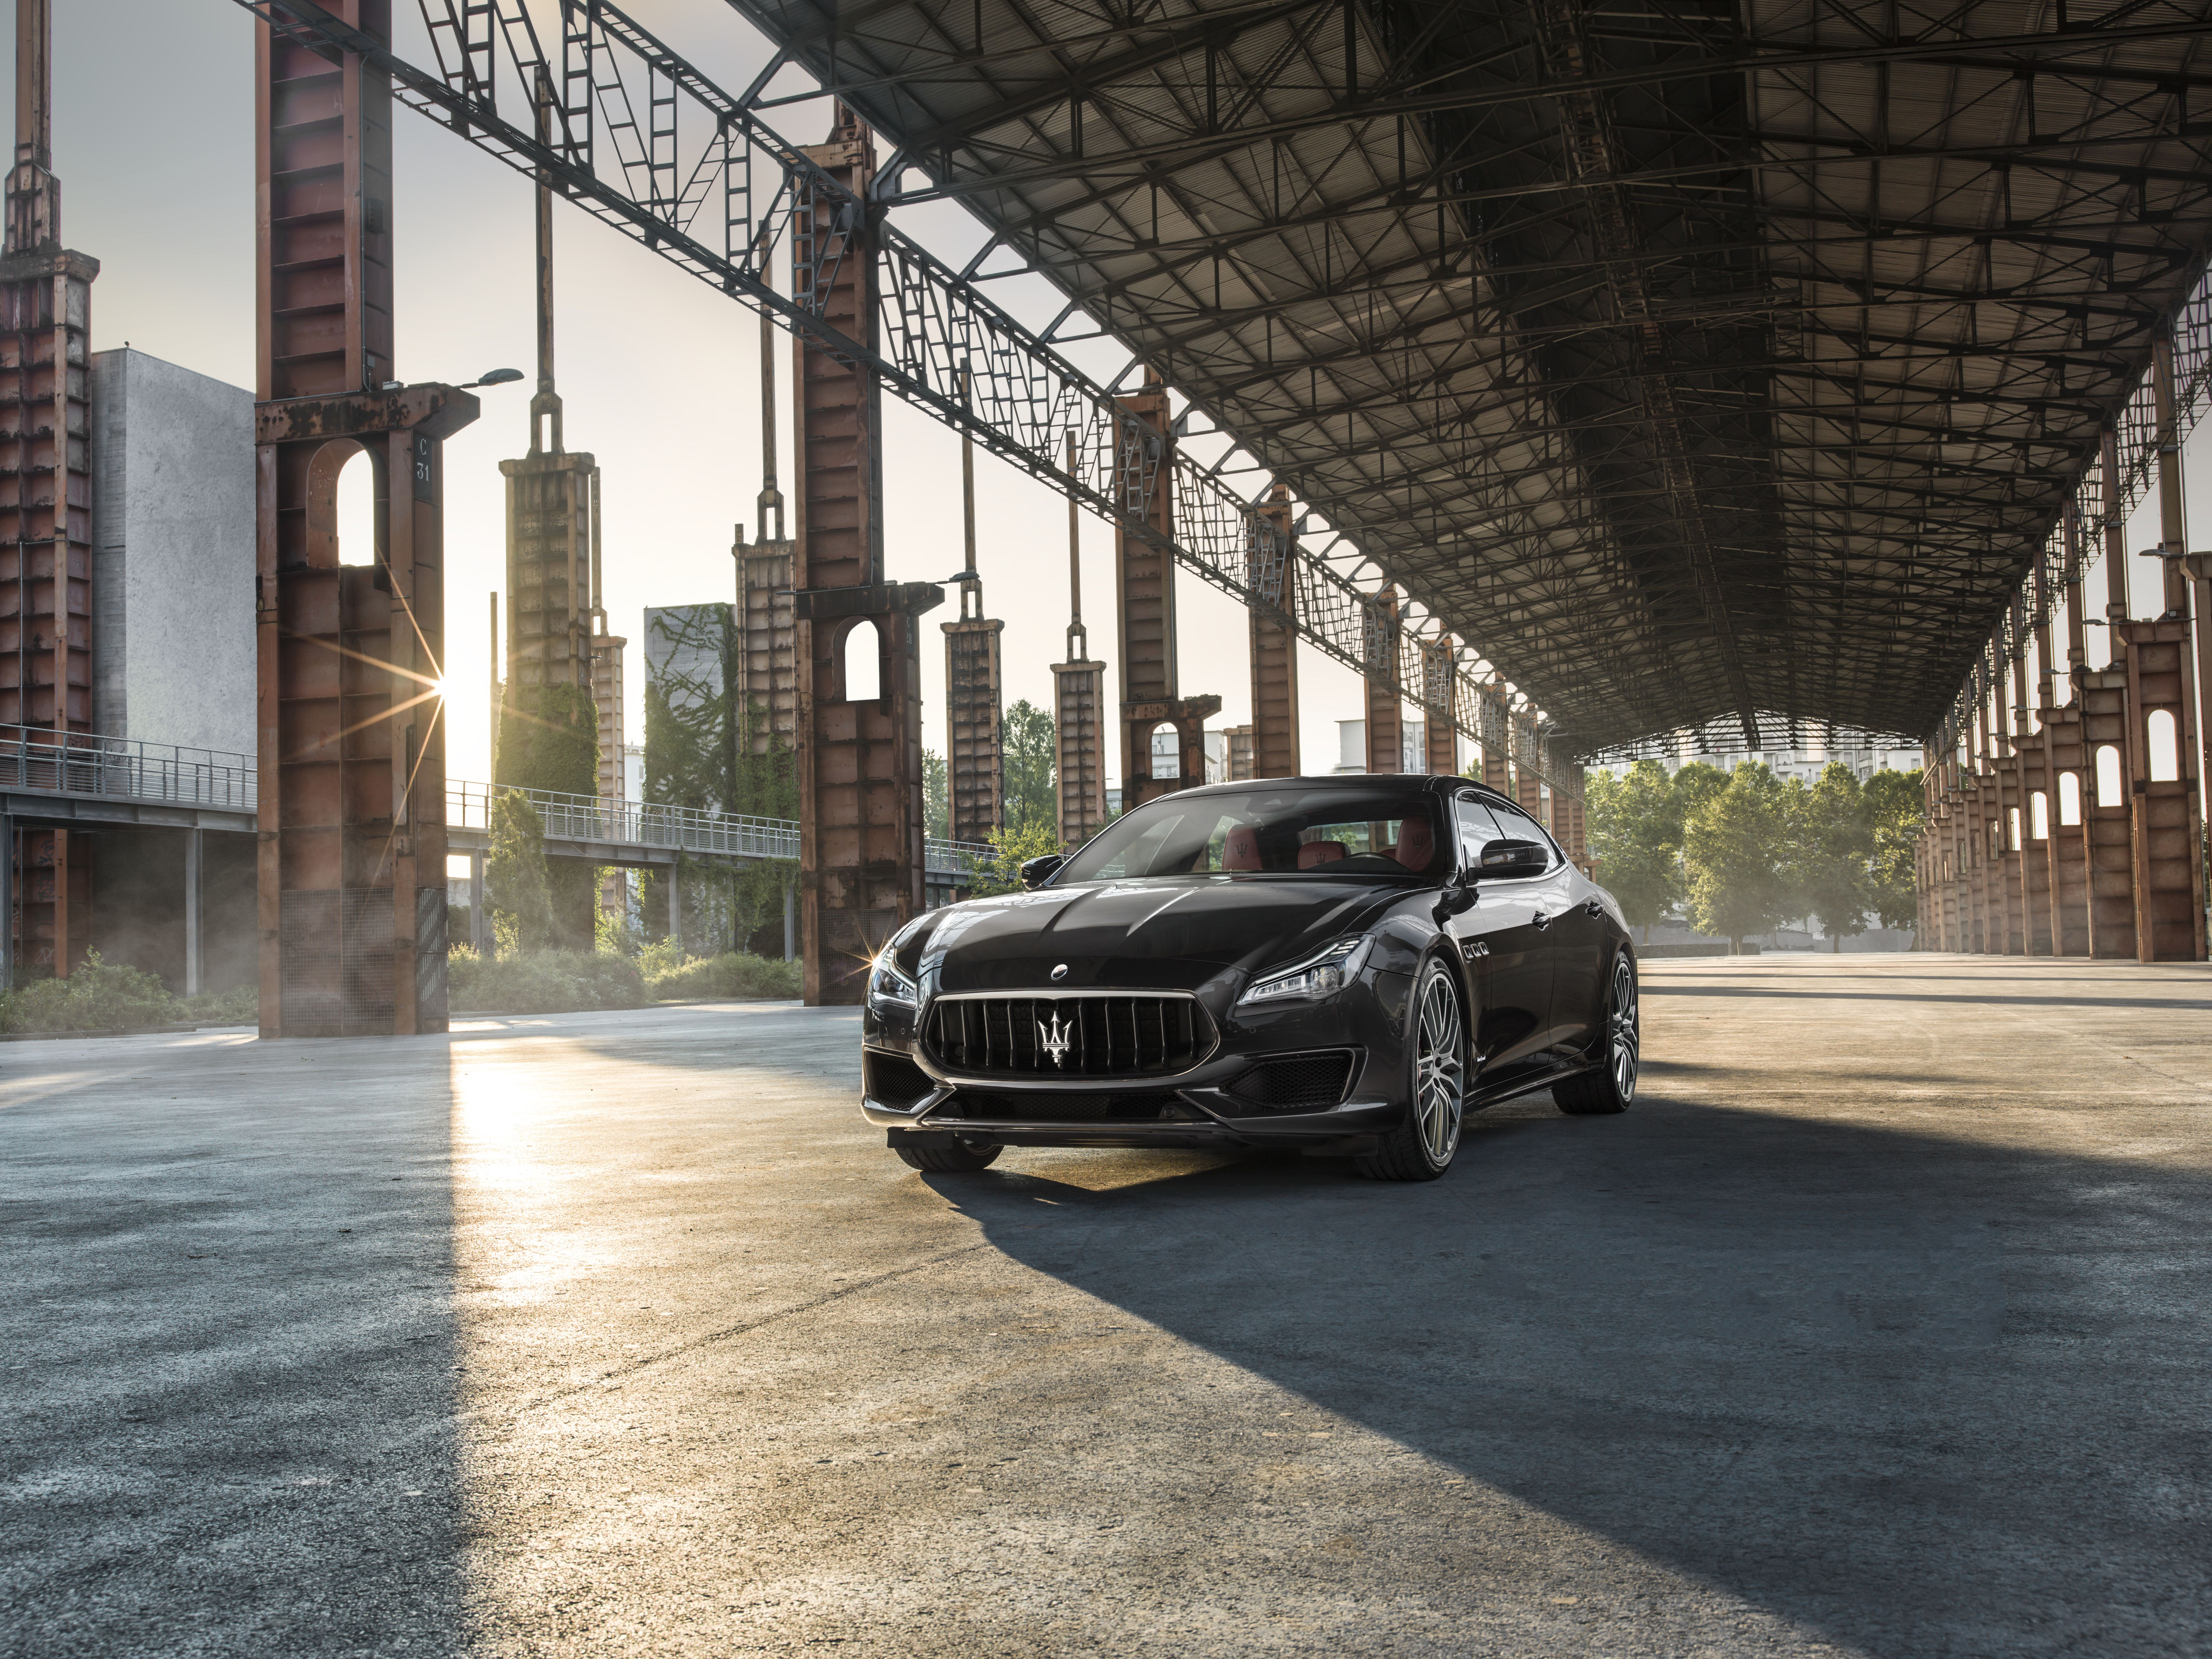 Télécharger des fonds d'écran Maserati Quattroporte HD